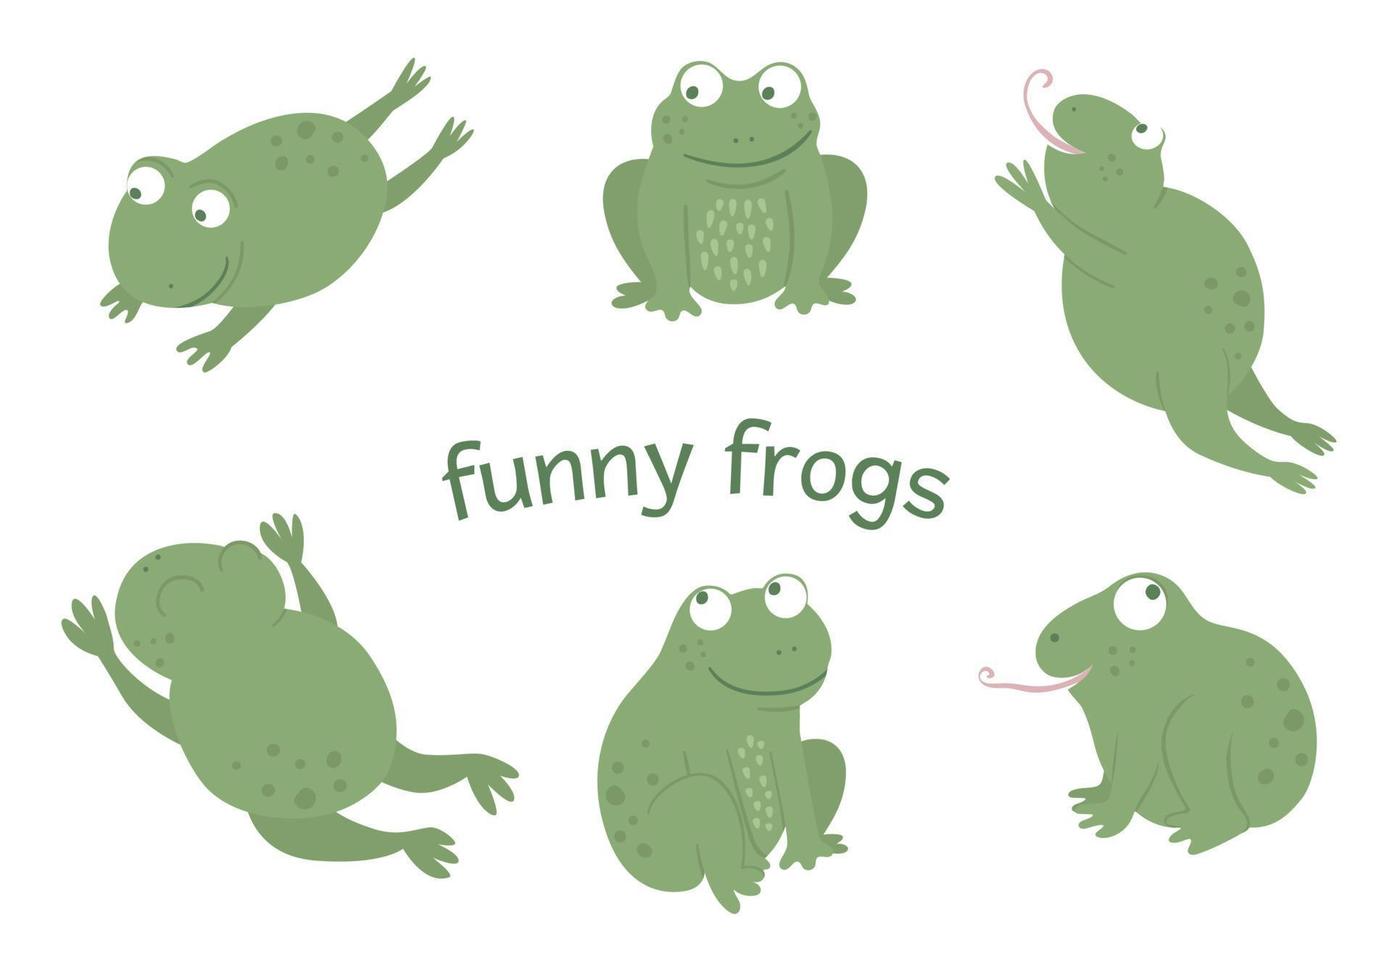 ensemble d'images vectorielles de grenouilles drôles plates de style dessin animé dans différentes poses. jolie illustration d'animaux des marais boisés. collection d'amphibiens vecteur